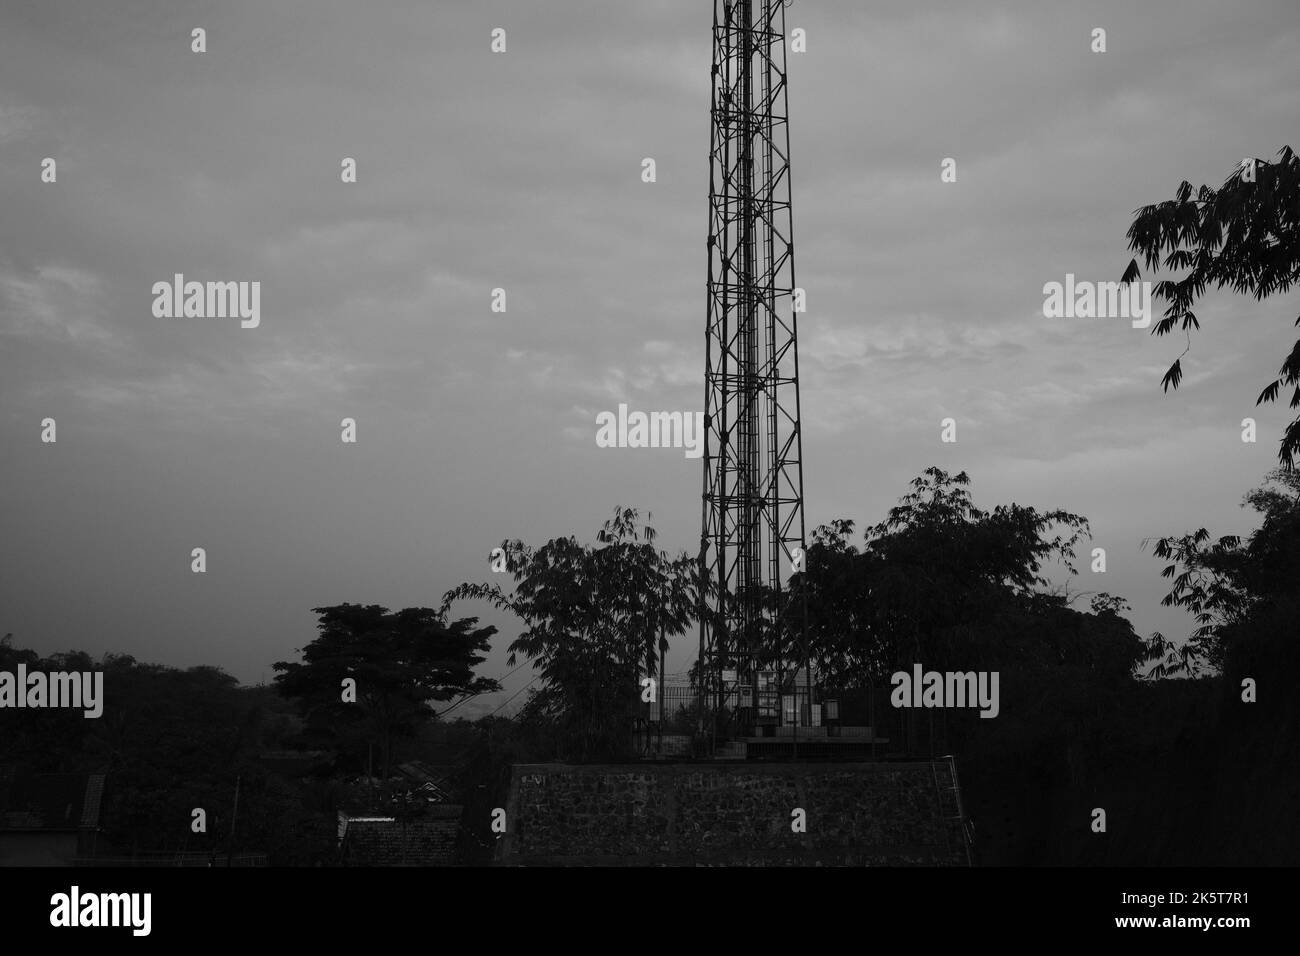 Antenna di segnale, foto monocromatica della torre di segnale costruita su terreni vuoti nella zona di Cikancung - Indonesia Foto Stock